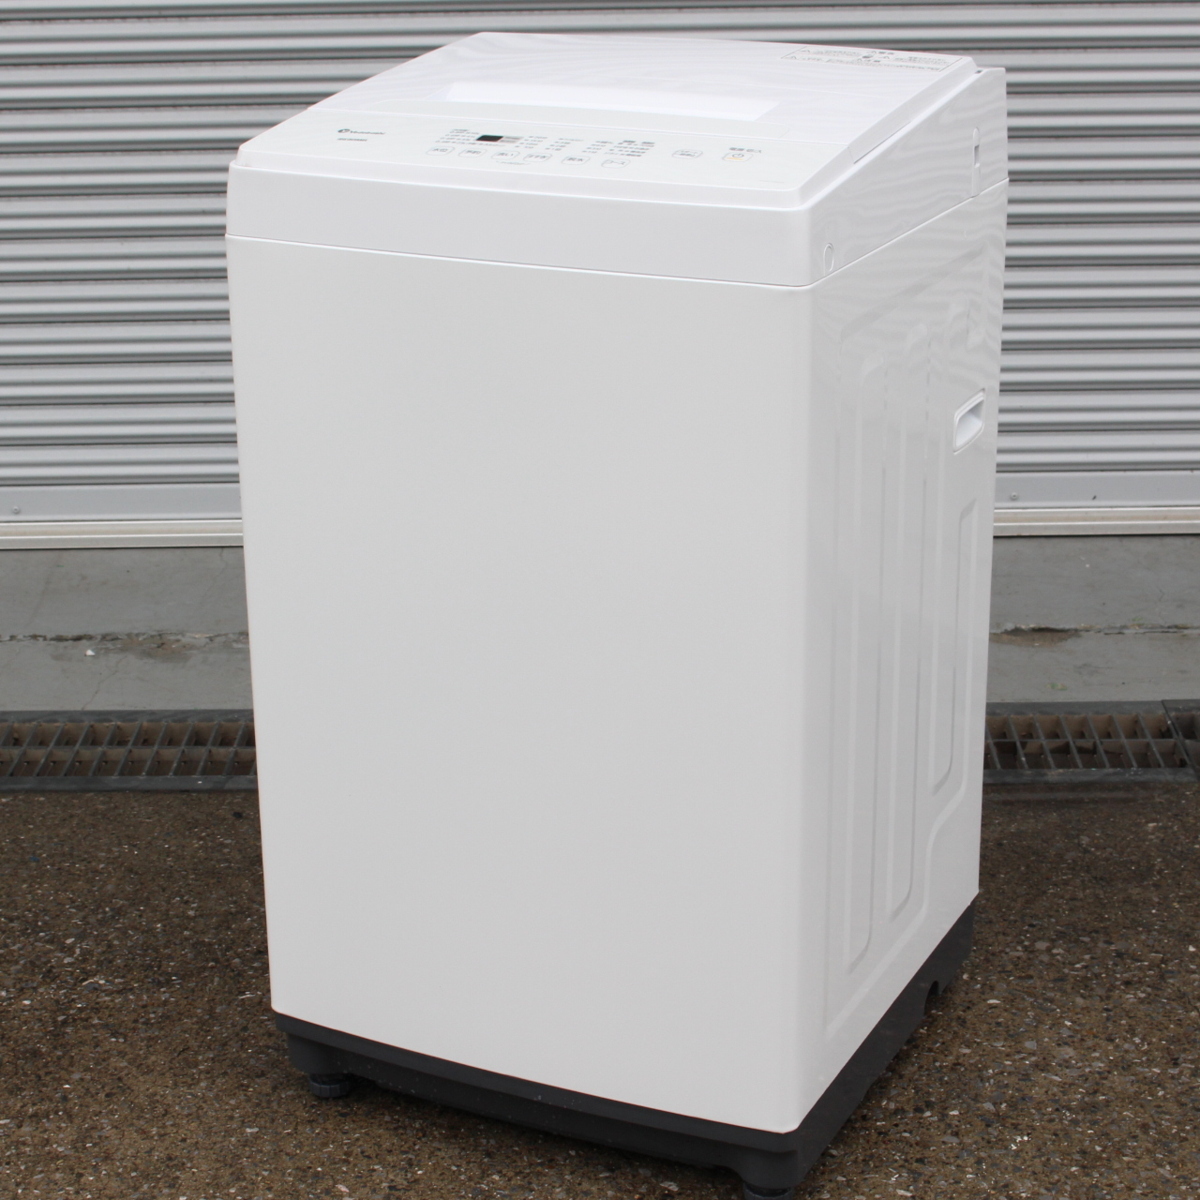 アイリスオーヤマ KAW-YD60A [全自動洗濯機 6.0kg]-